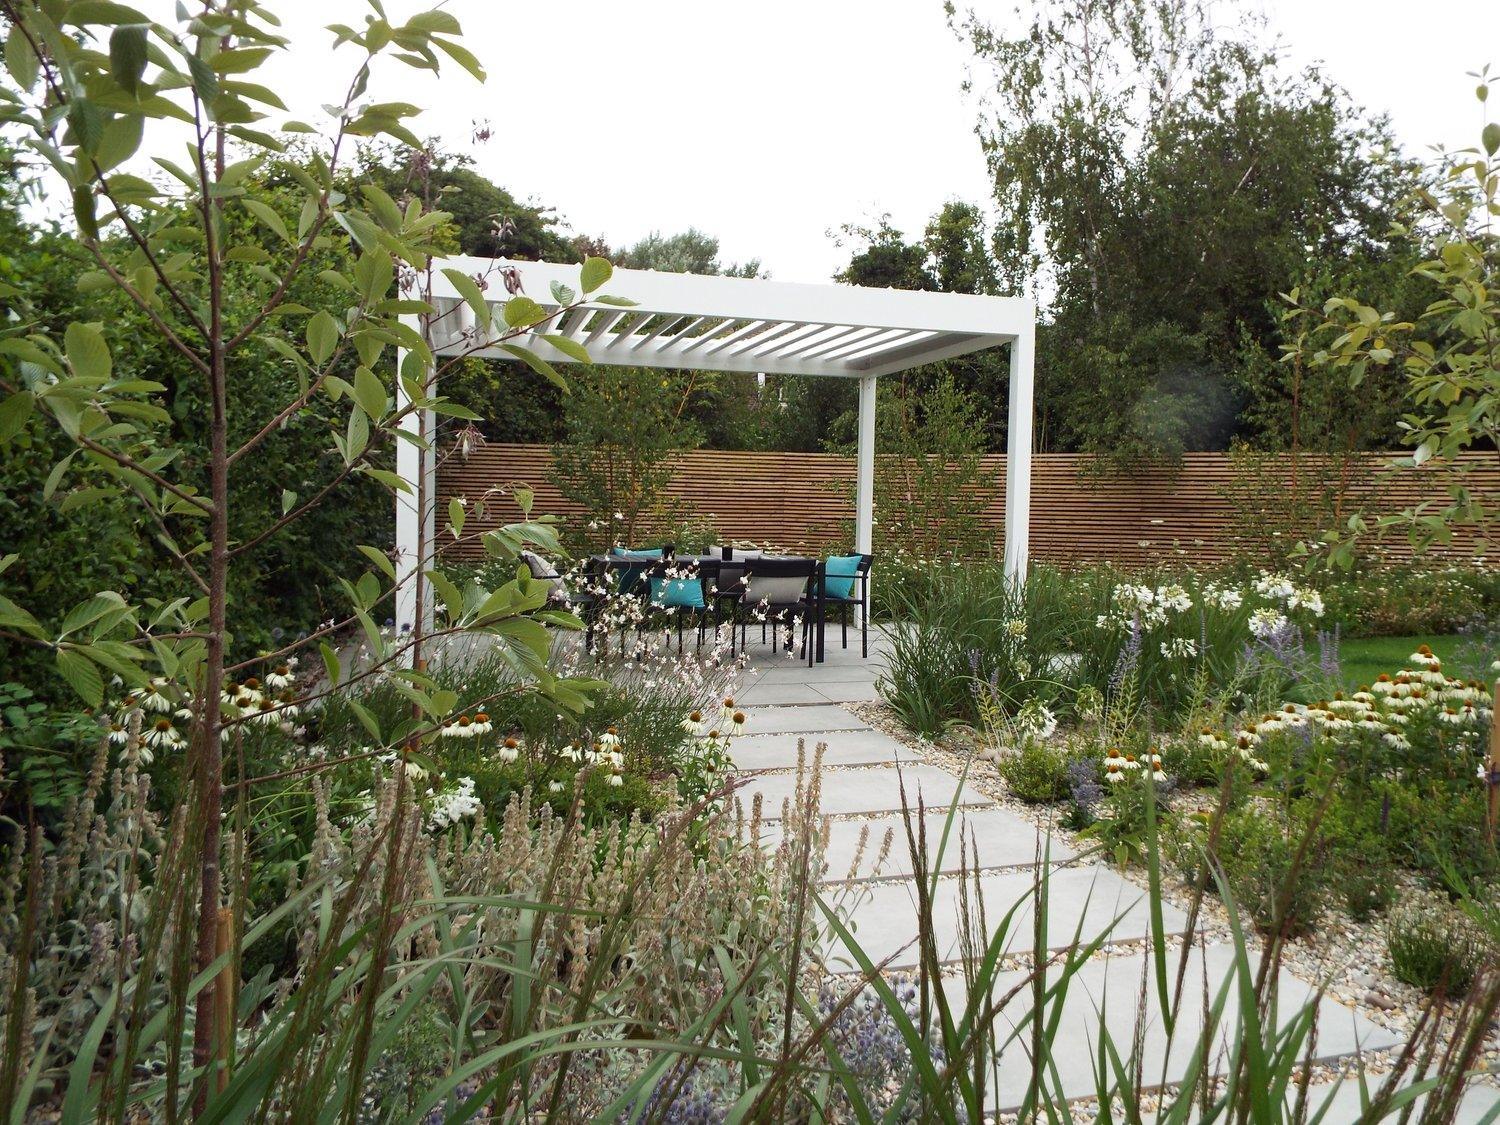 Algarve Louvered Canopy - Garden House Design